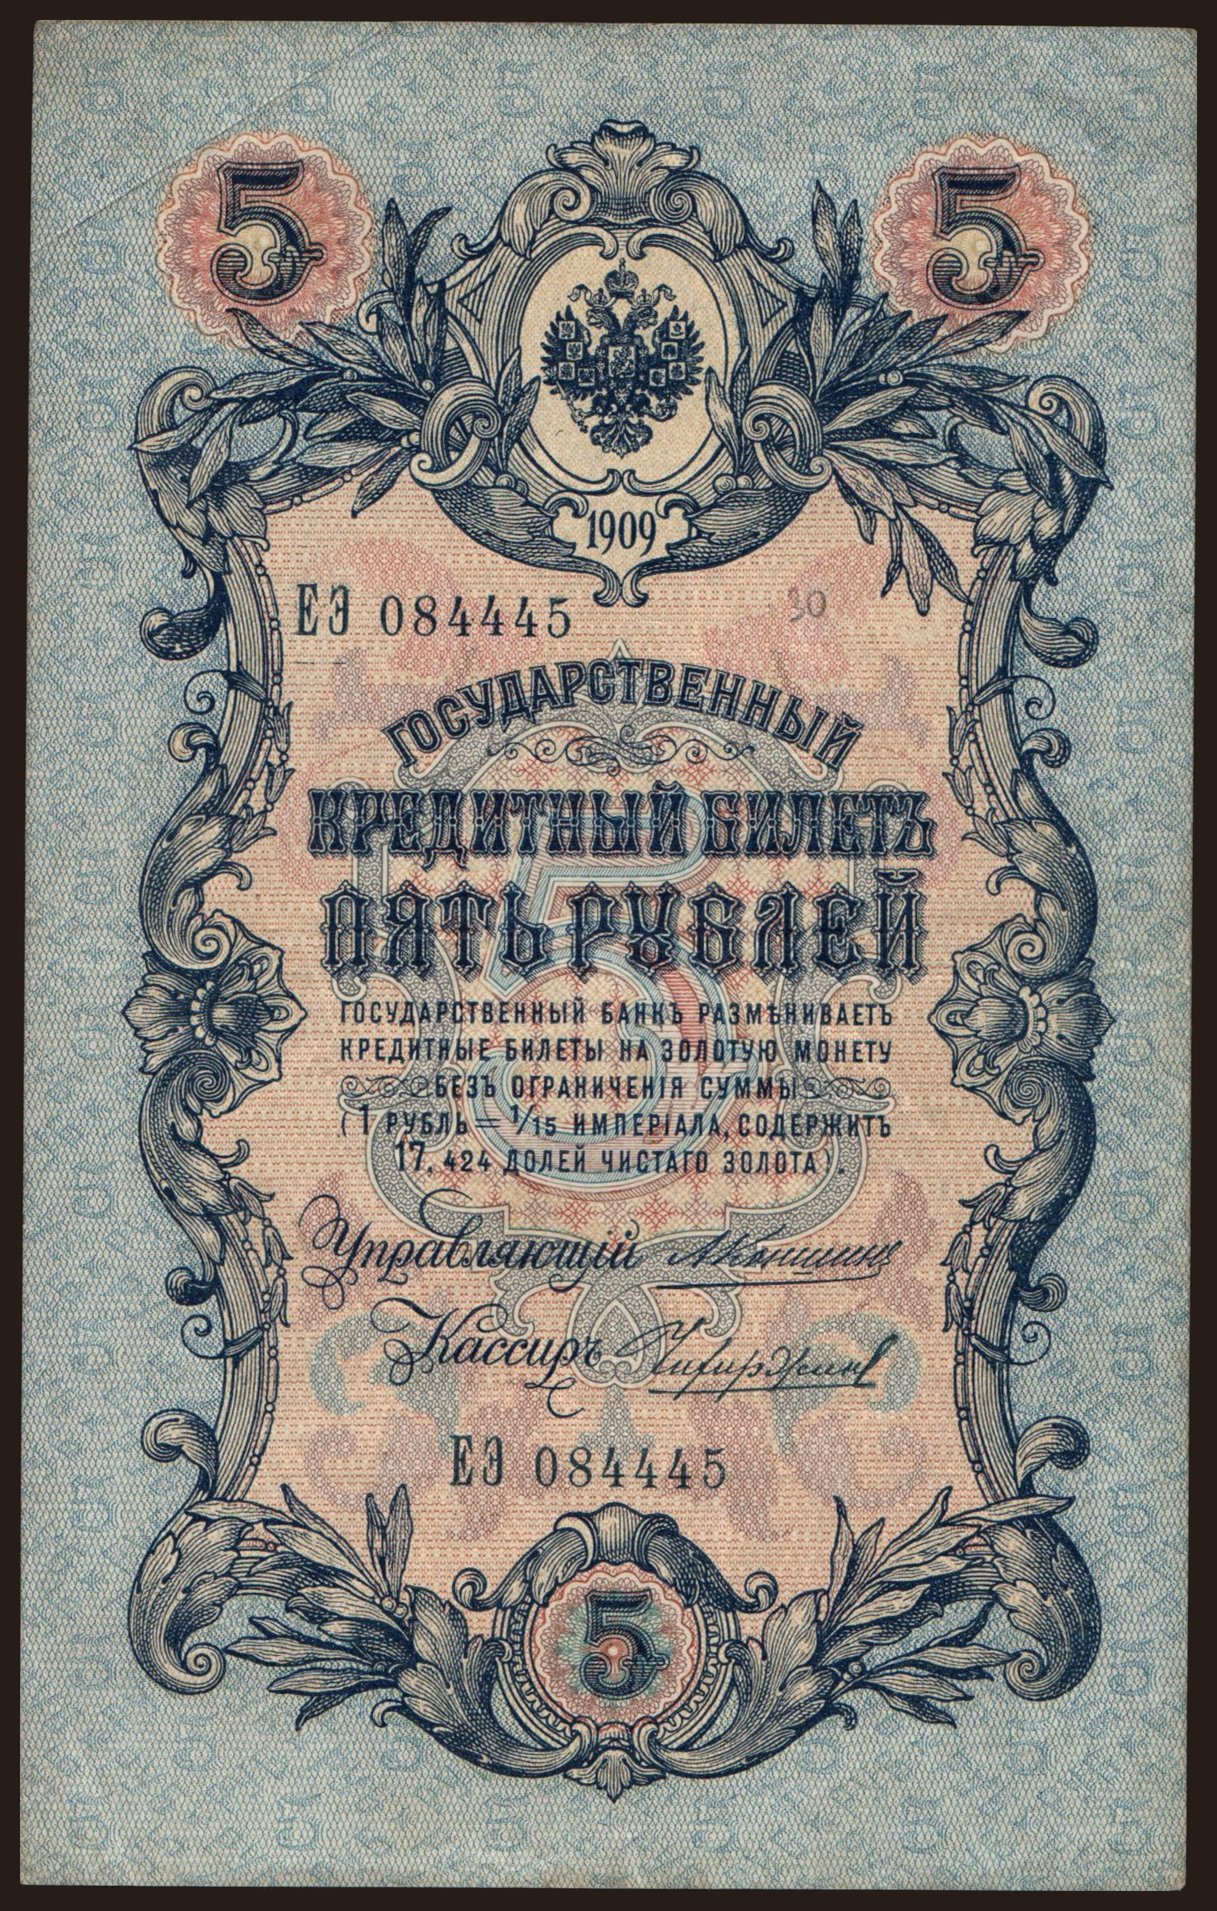 5 rubel, 1909, Konshin/ Tschichirshin